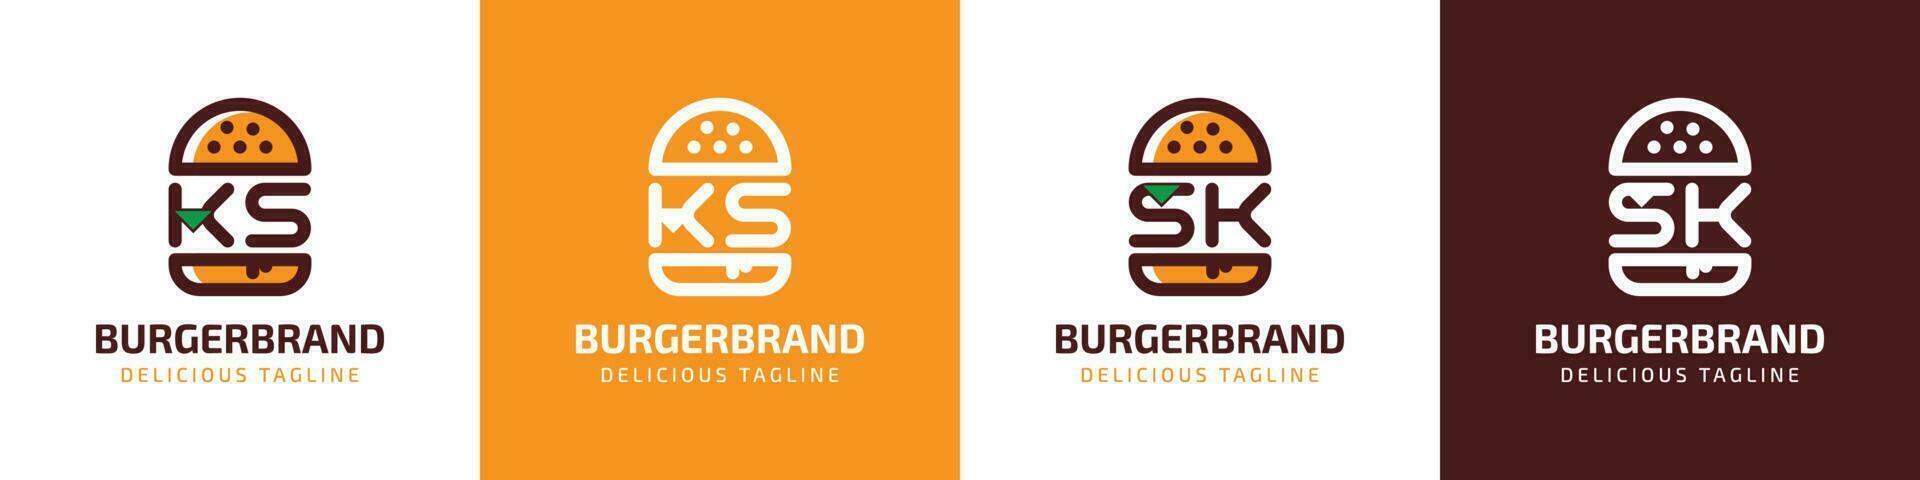 carta ks e sk hamburguer logotipo, adequado para qualquer o negócio relacionado para hamburguer com ks ou sk iniciais. vetor